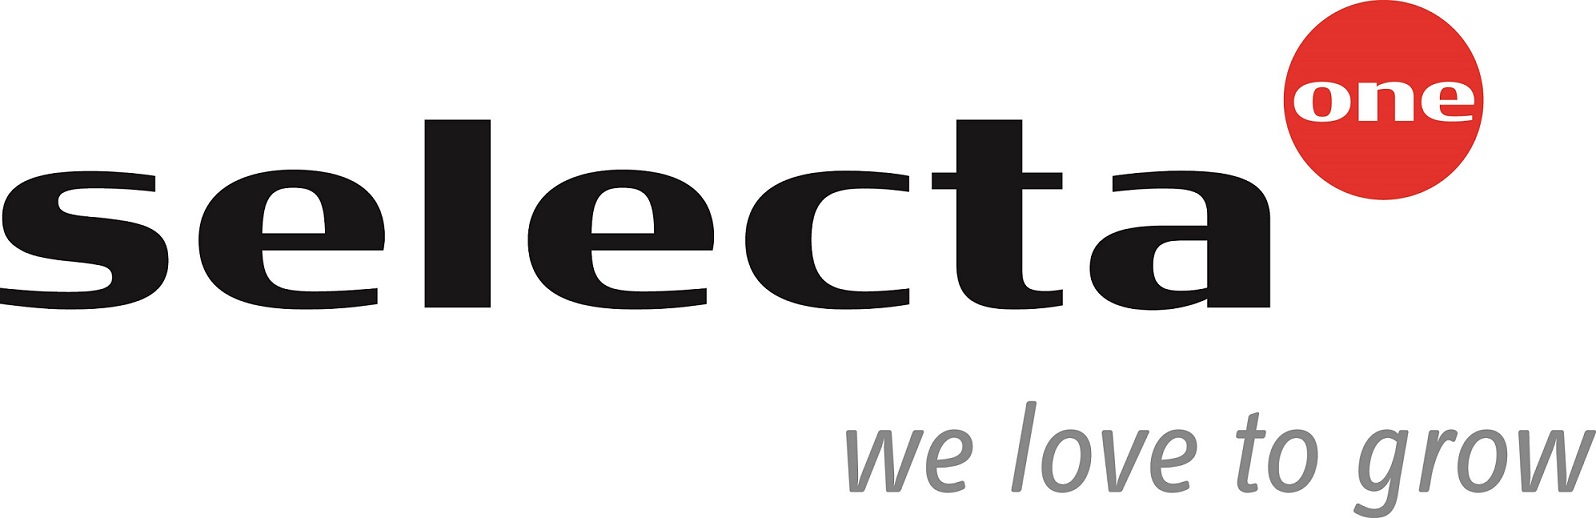 Selecta Klemm GmbH & Co. KG